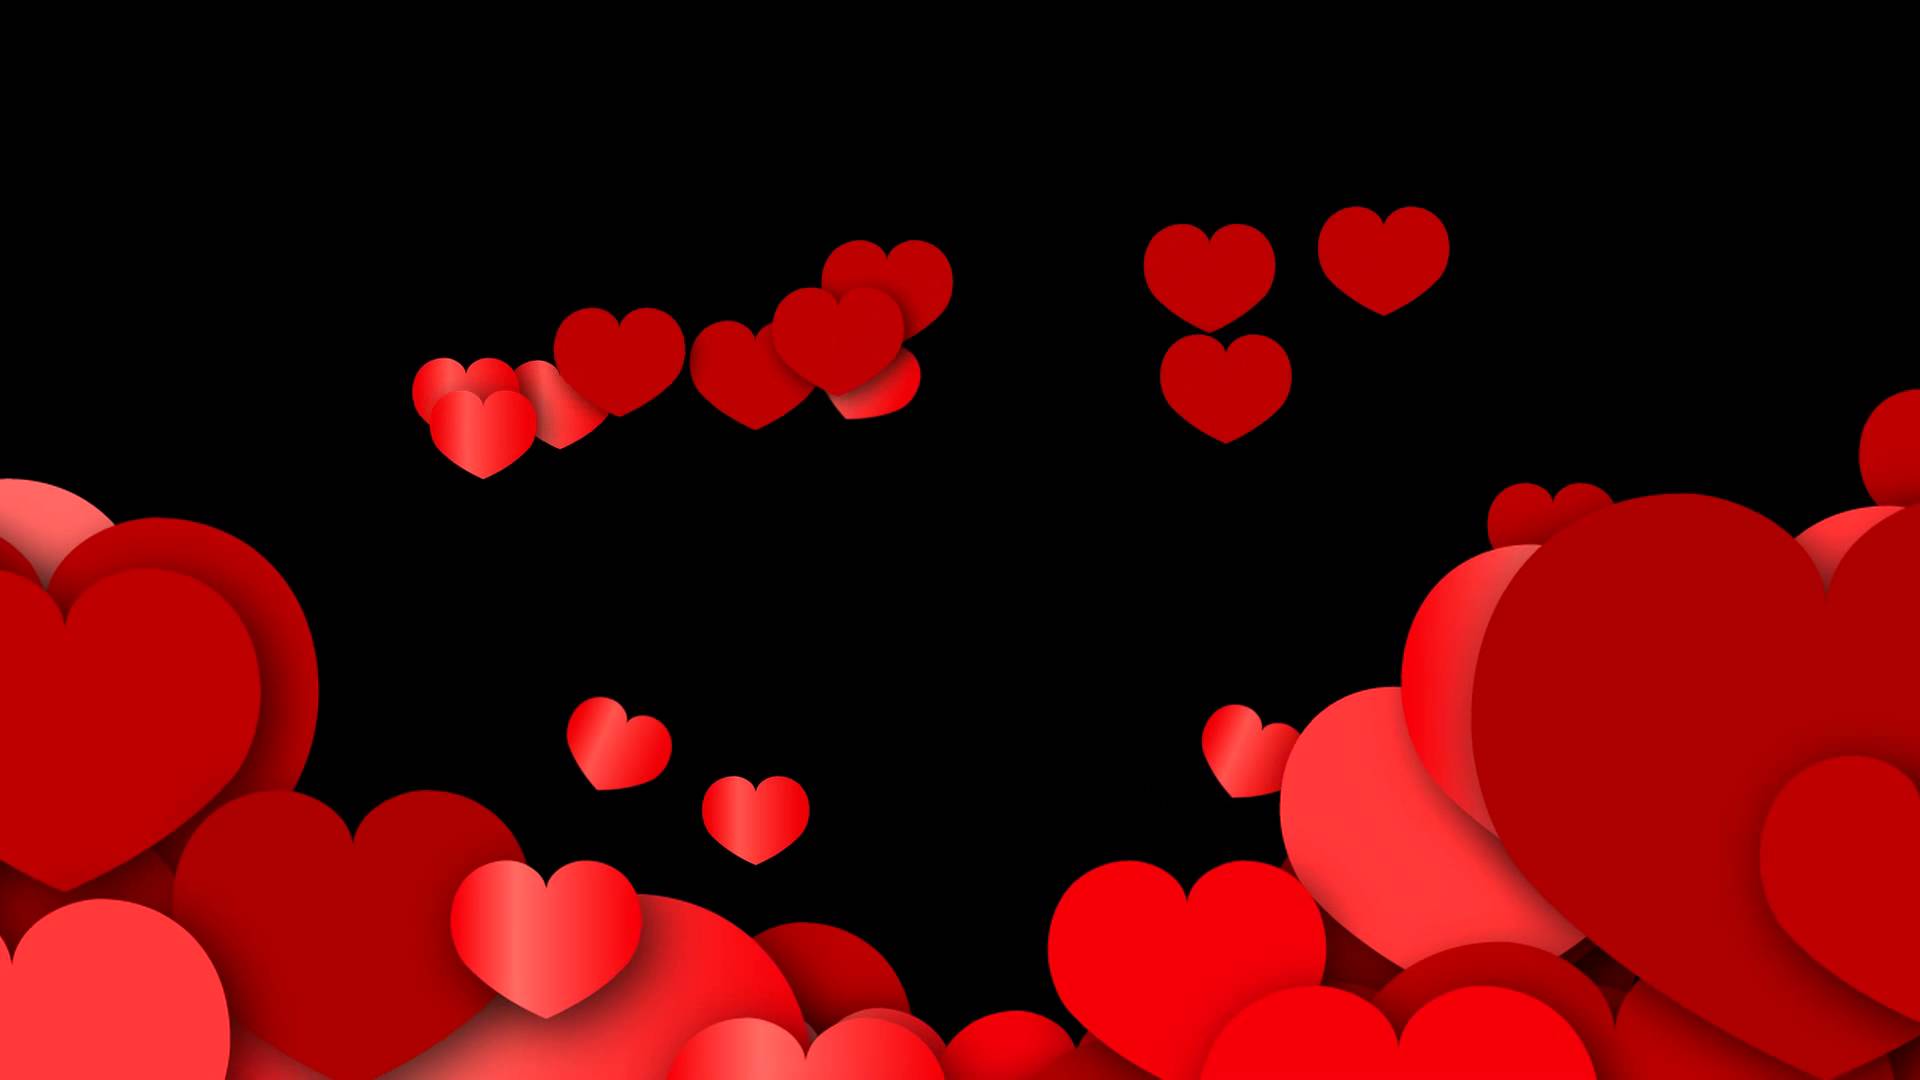 صور قلوب متحركة رومانسية , صور رومانسية للقلوب رسائل حب